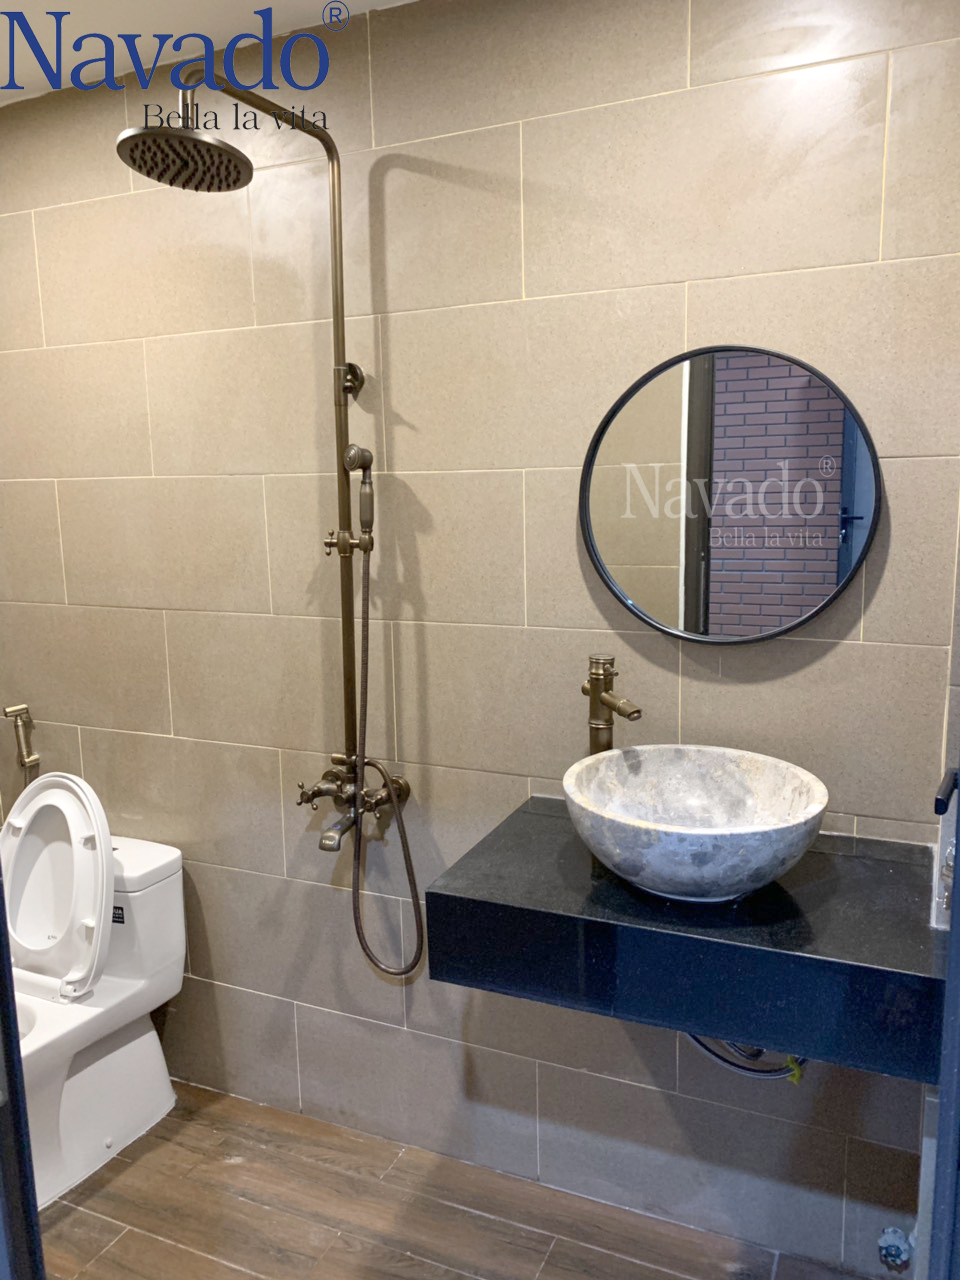 Gương tròn decor treo phòng tắm nghệ thuật Navado